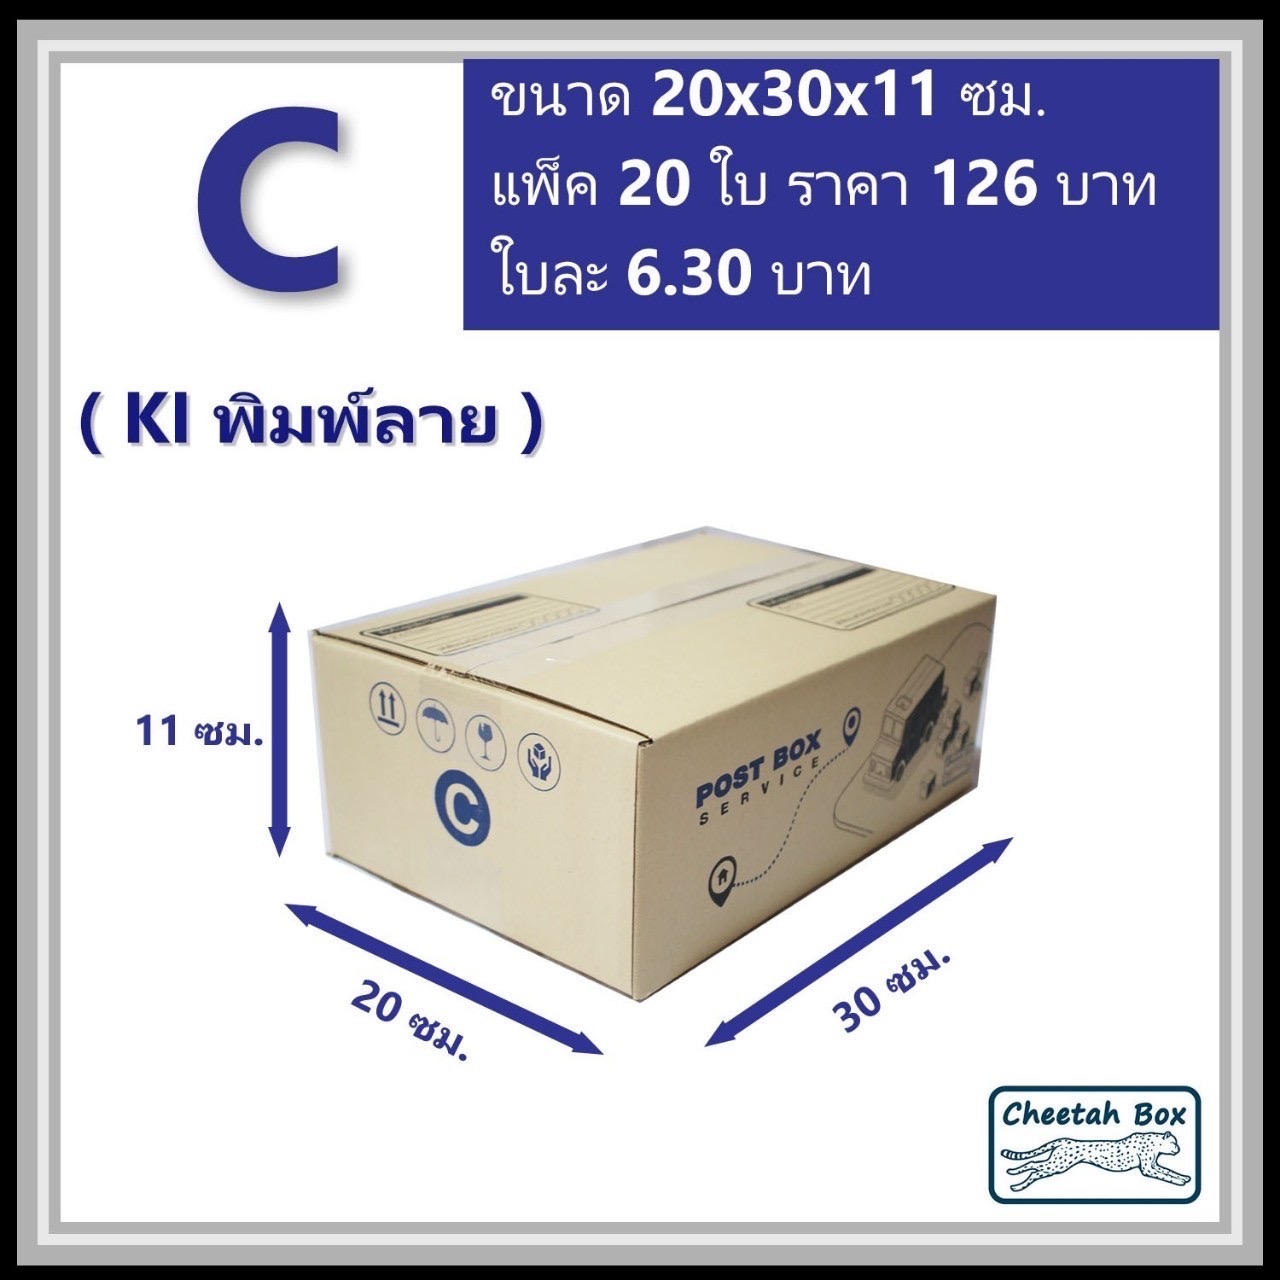 กล่องไปรษณีย์ C (S:Kerry) (Cheetah Box ขนาด 20*30*11 CM)